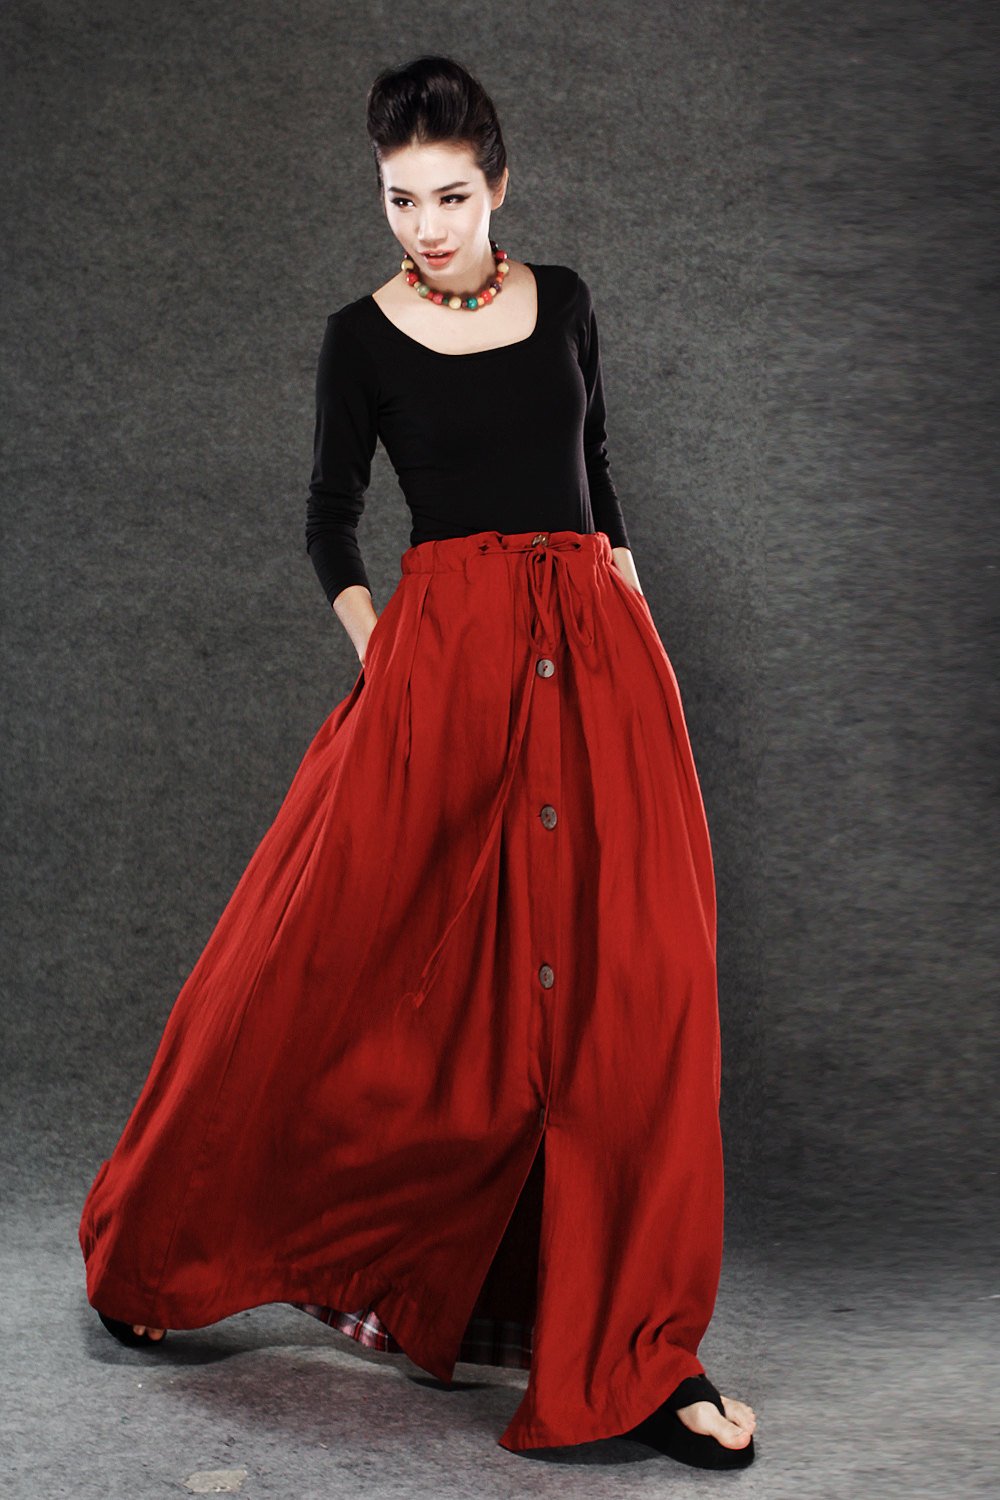 Red Linen Skirt - Maxi Skirt Long Women's Skirt Simple Design Versatile Handmade Clothing C055